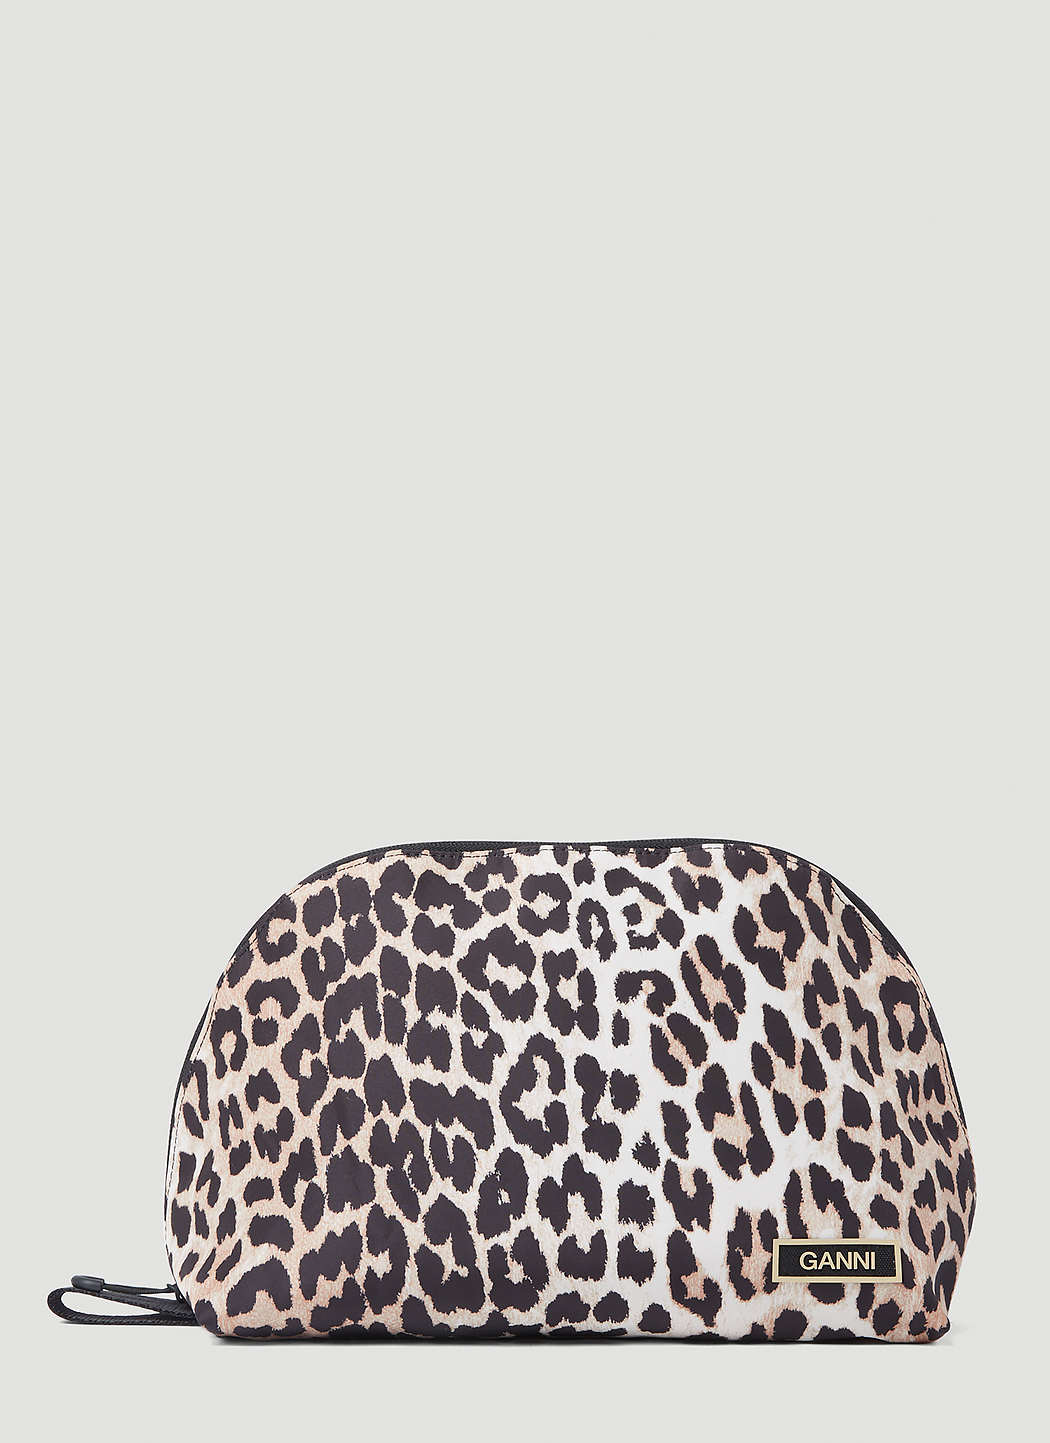 Leopard Print Vanity Bag